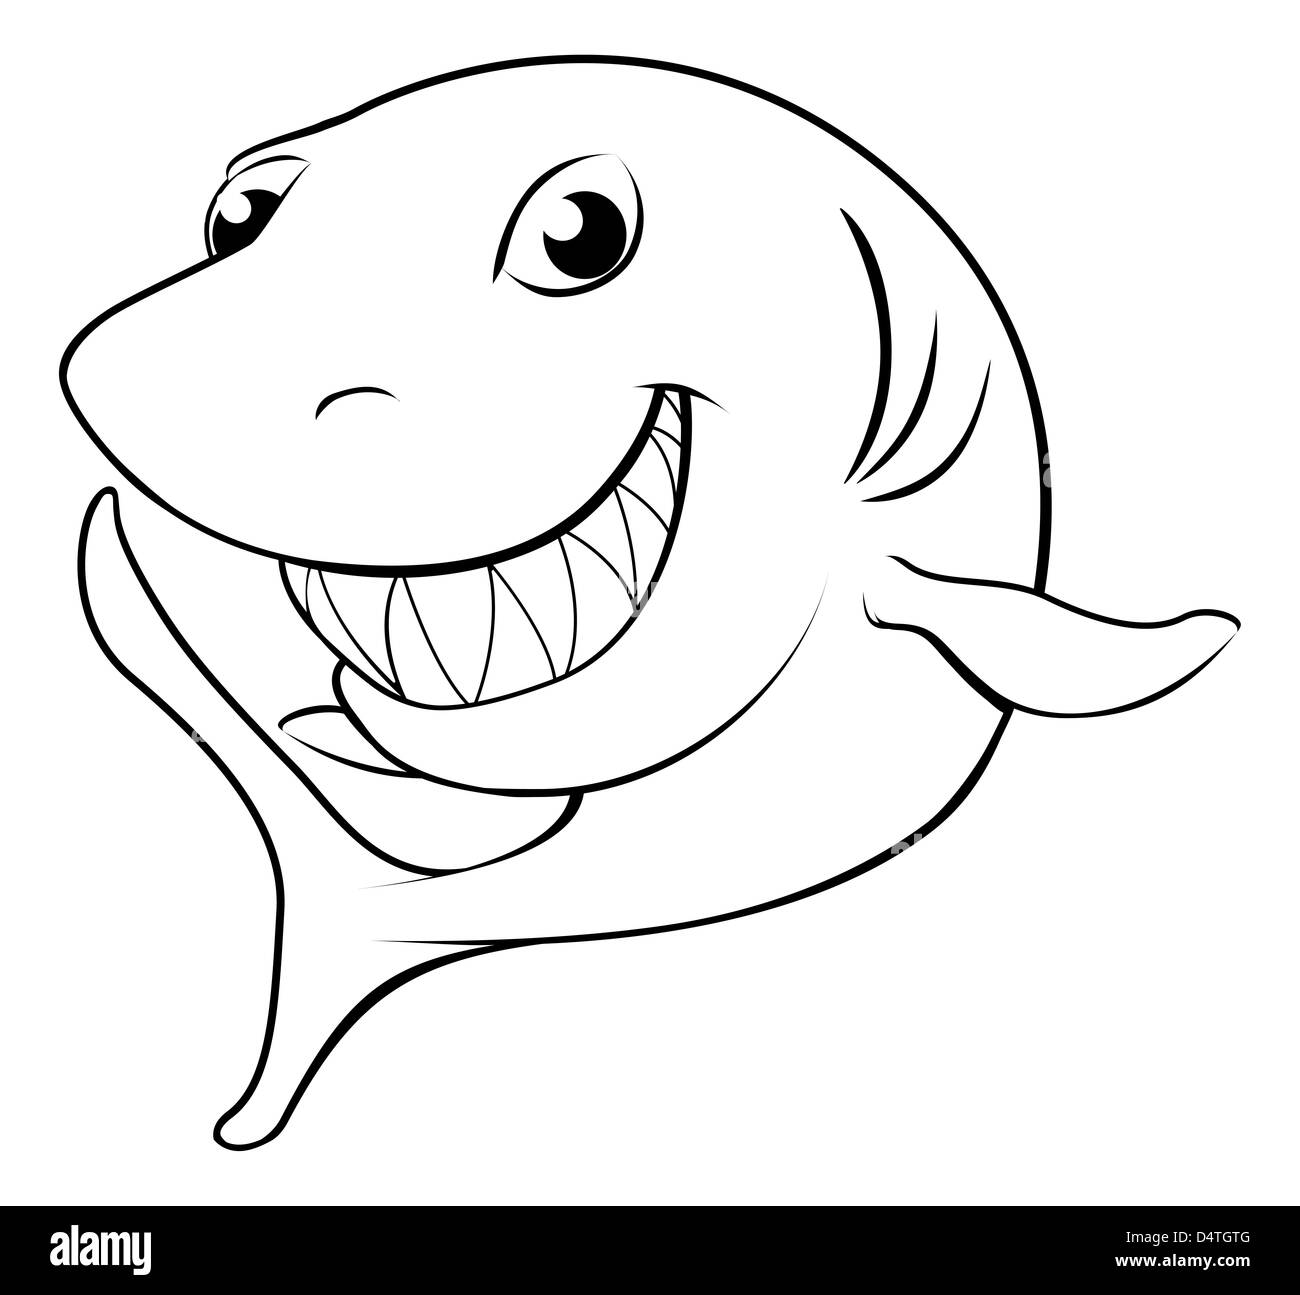 Illustration noir et blanc d'un heureux cartoon shark Banque D'Images